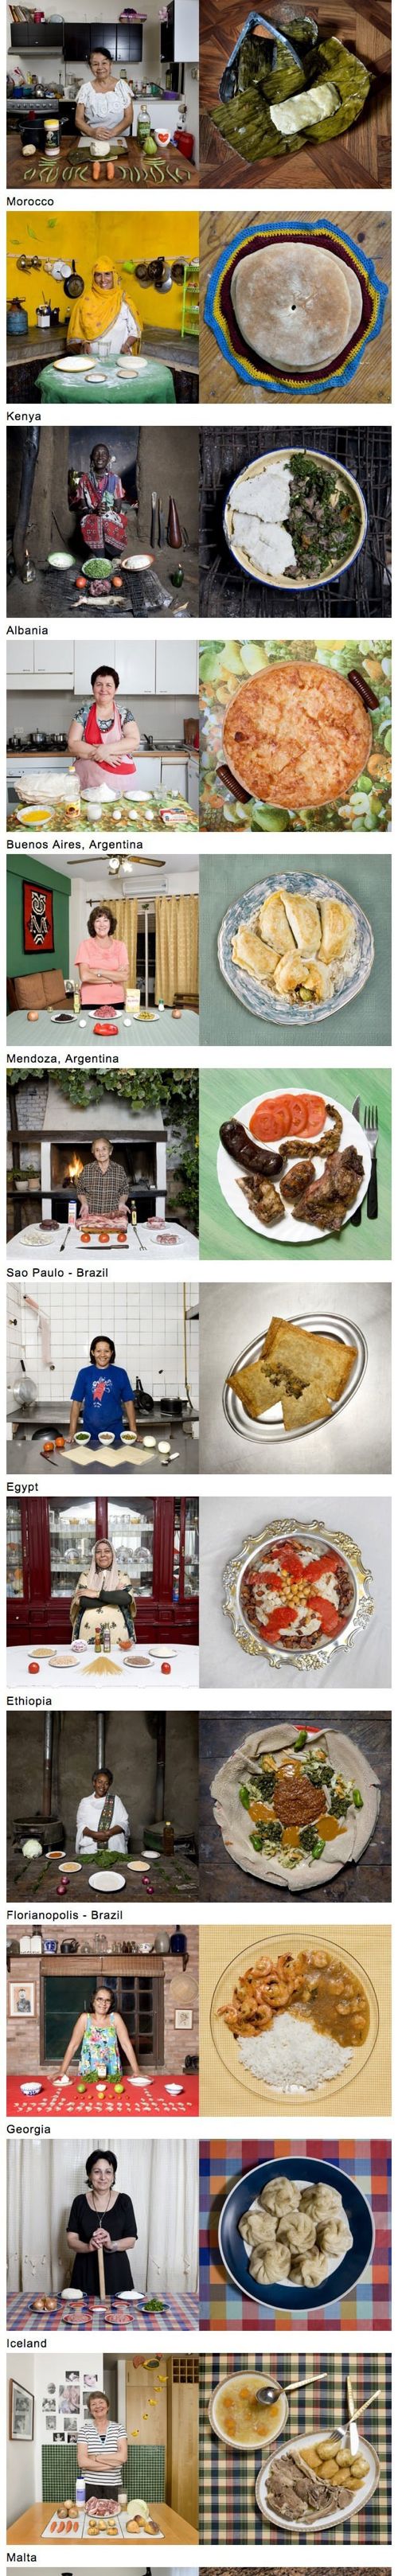 세계 각국의 할머니 음식.jpg